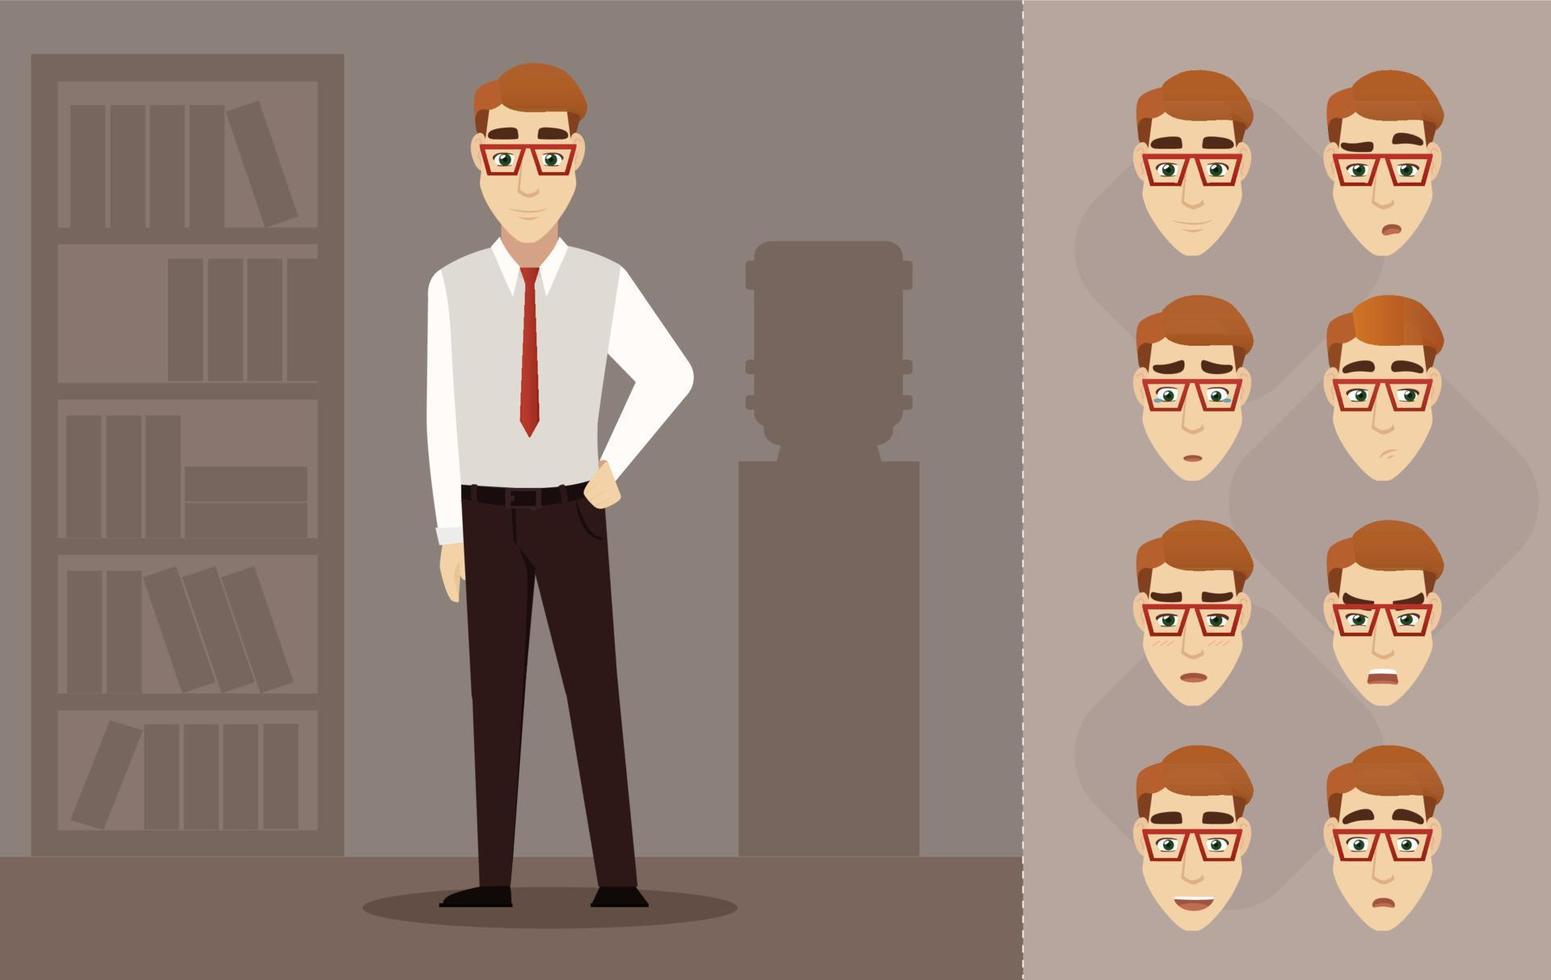 jonge knappe zakenman in rode bril. vlakke afbeelding met mannen in functie. karakter emotie set vector